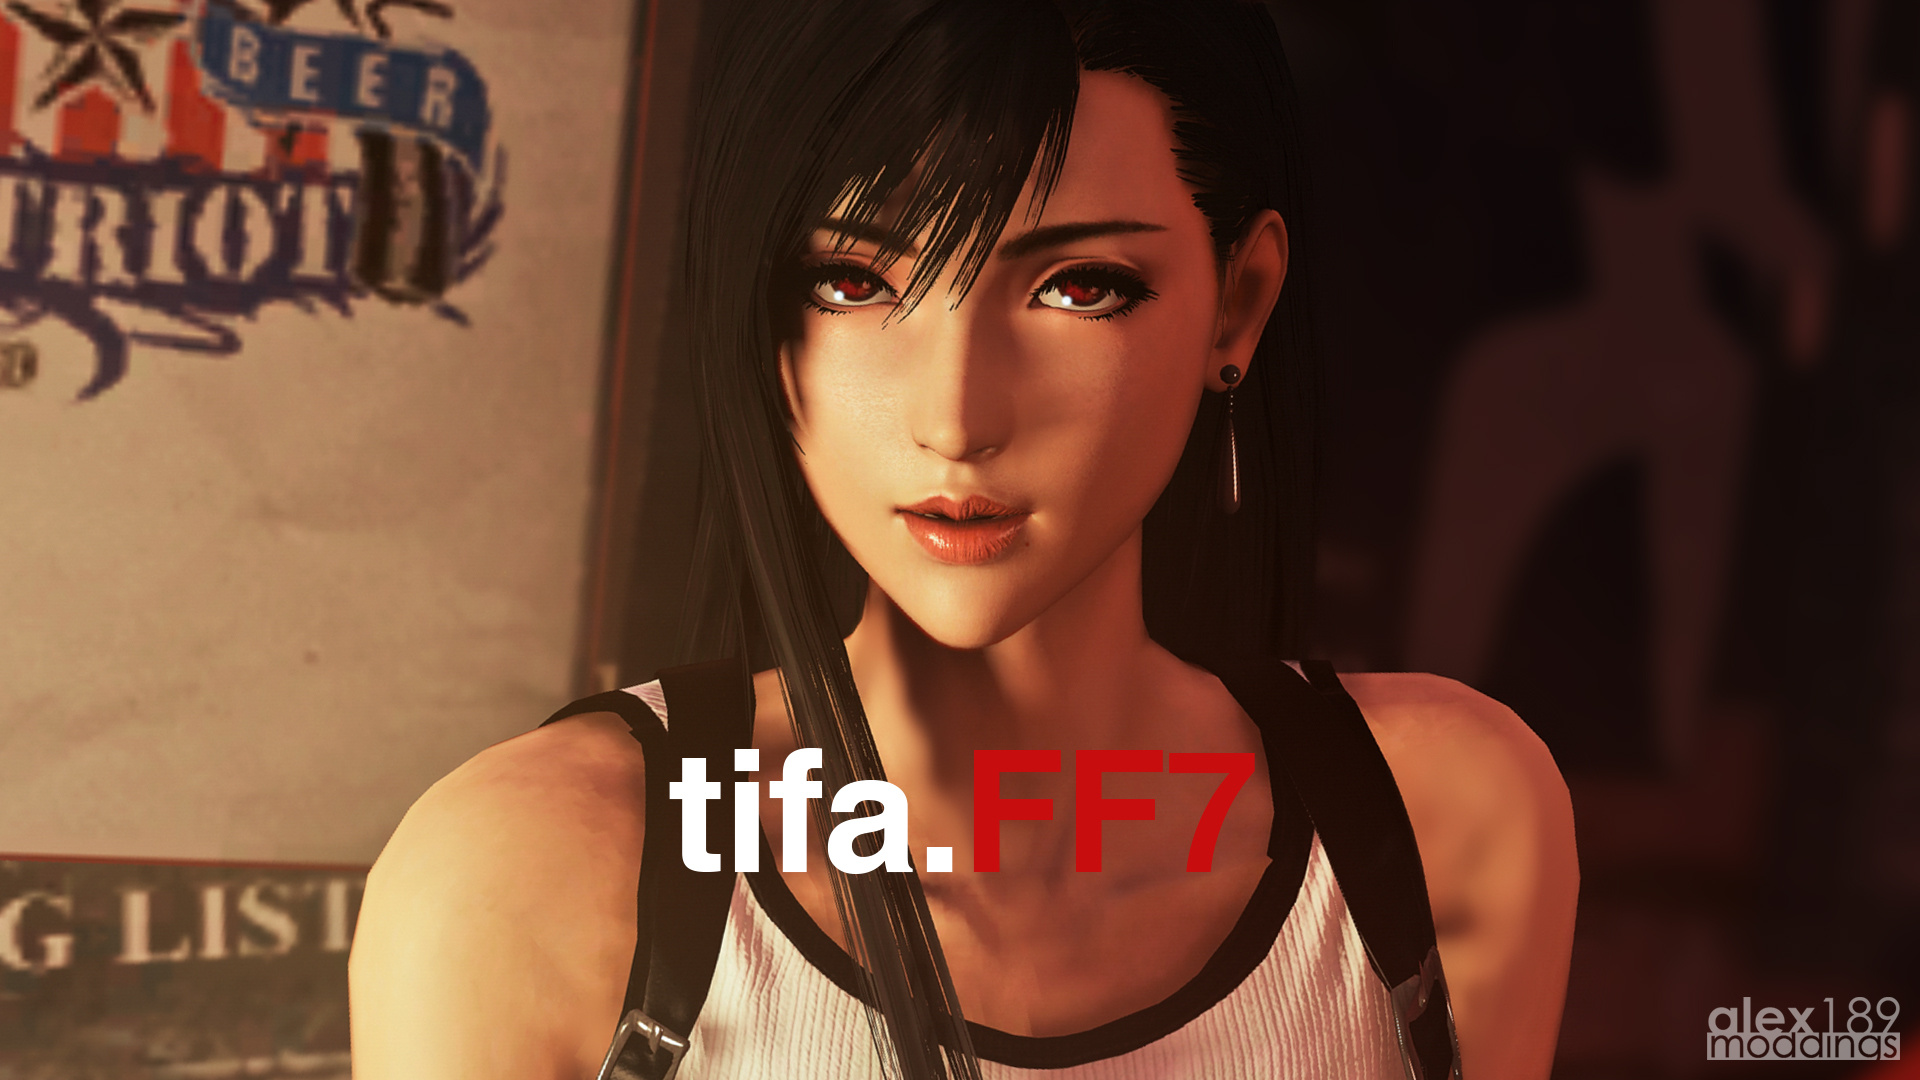 Final Fantasy VII Remake Mod Brings Back Original Character Models